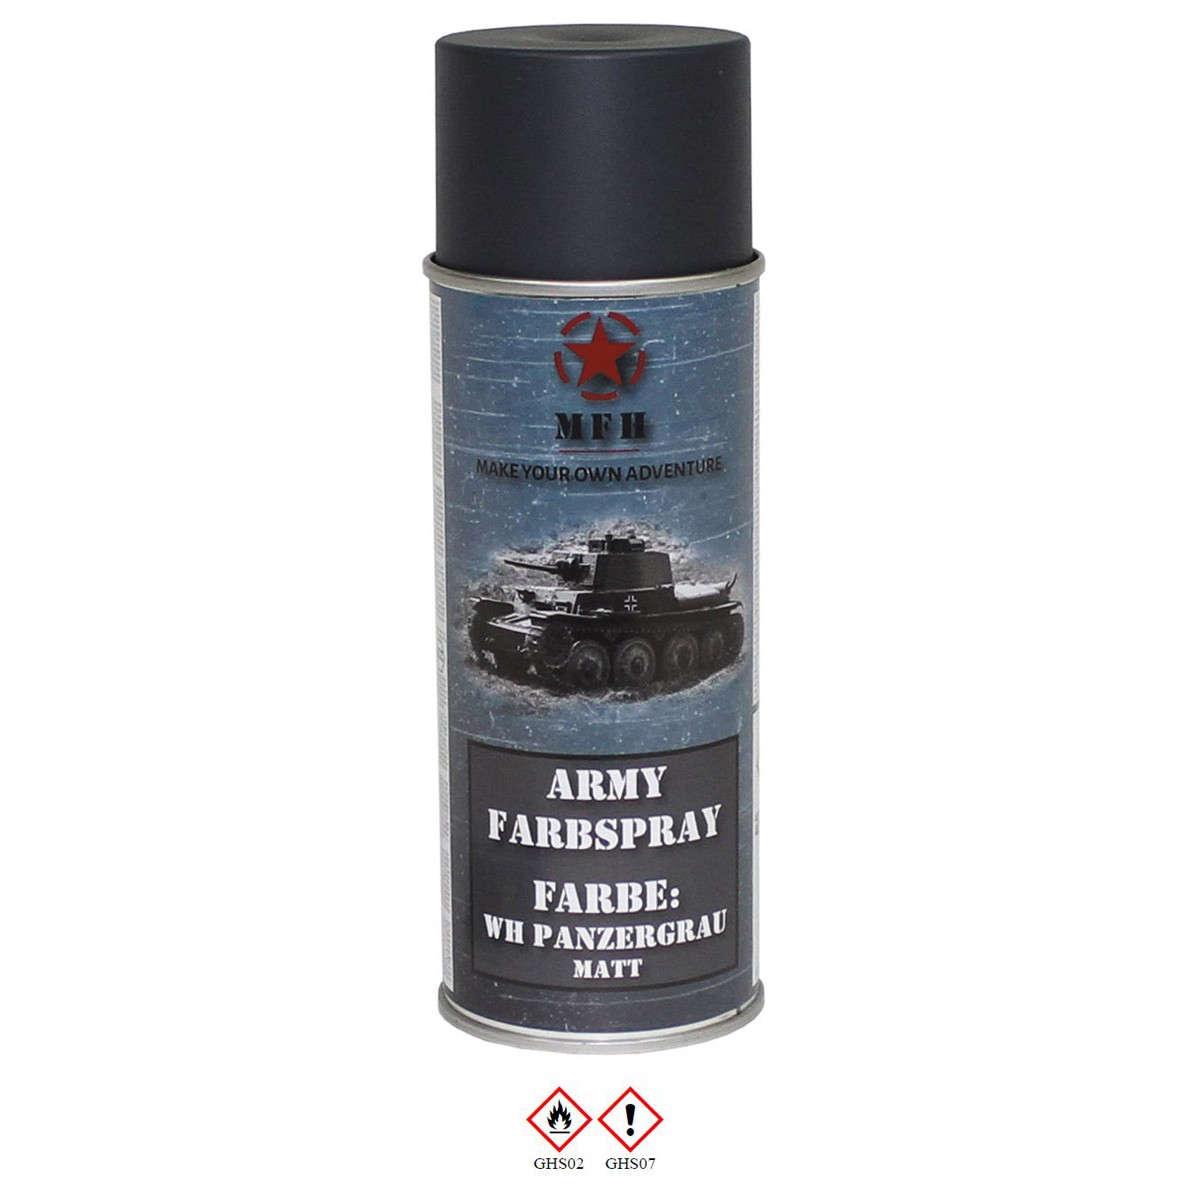 Farbspray, "Army" WH PANZERGRAU, matt, 400 ml